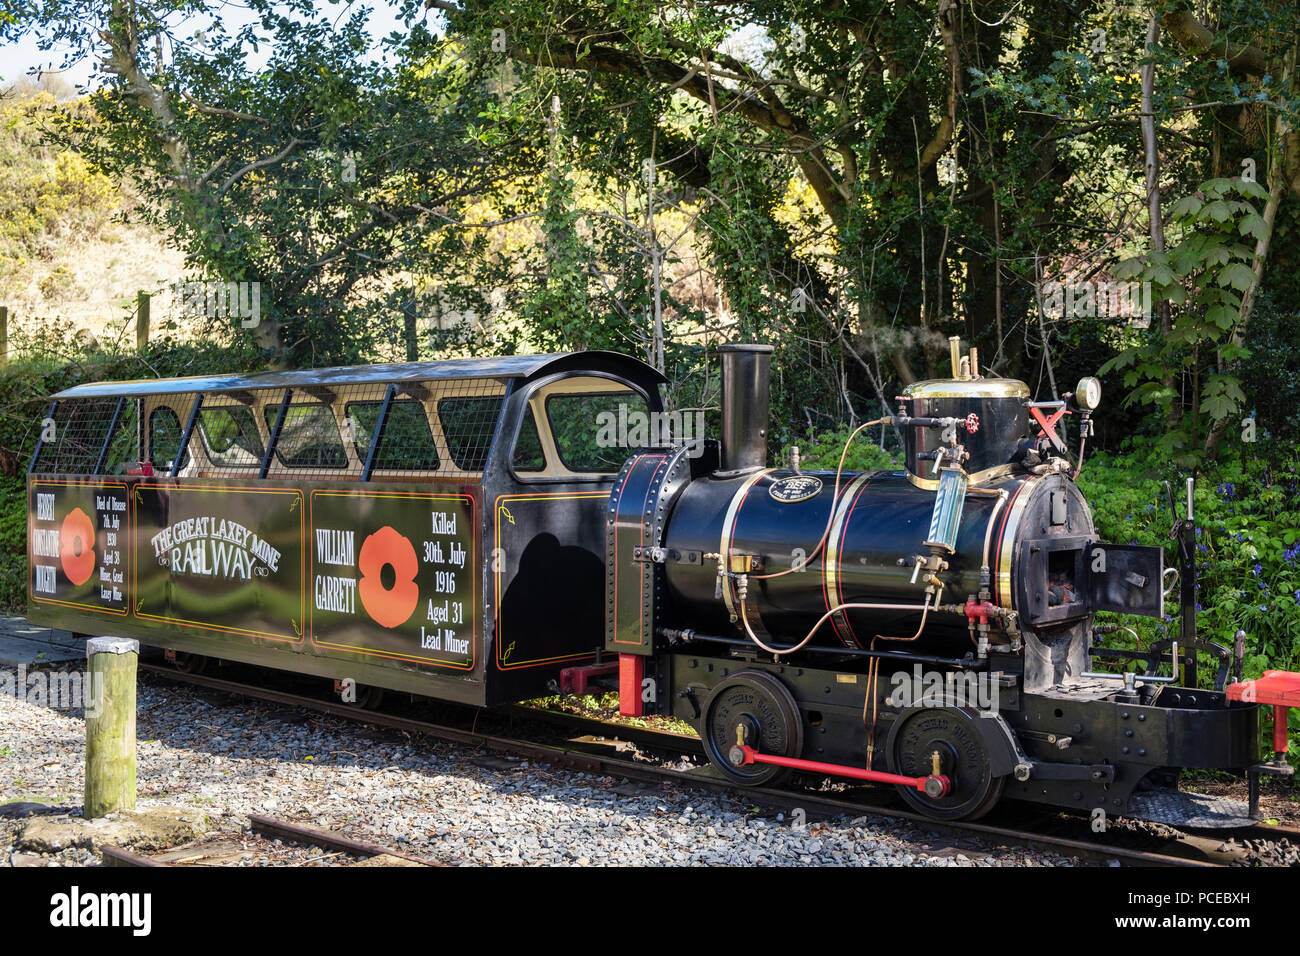 Grande miniera Laxey Steam Railway treno motore attrazione turistica. Laxey, Isola di Man e Isole britanniche Foto Stock